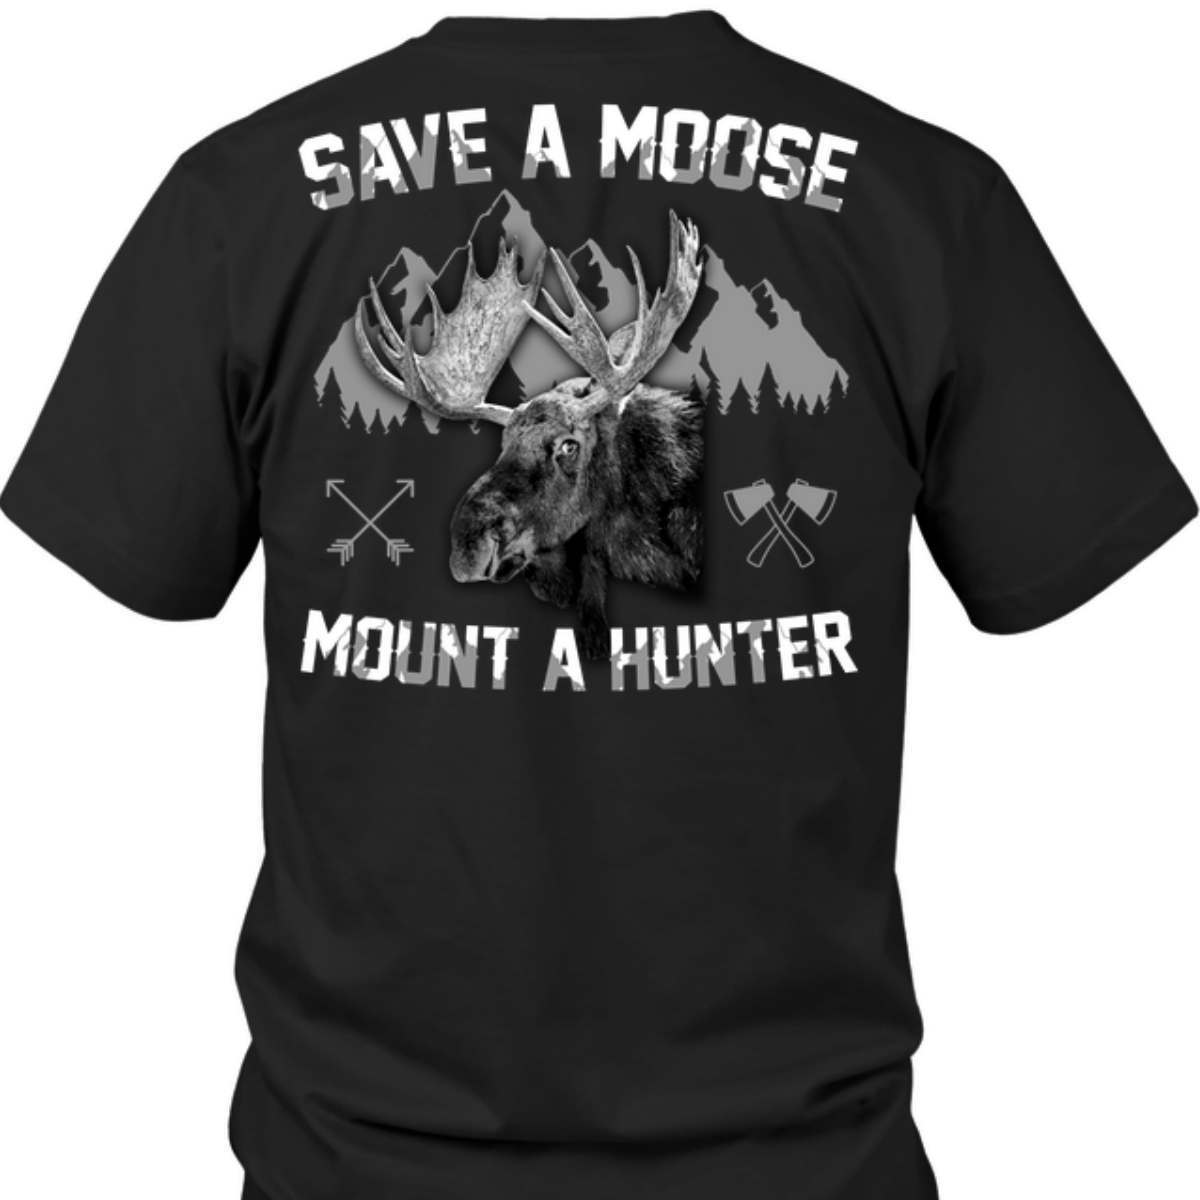 Save a moose mount a hunter - Moose lover